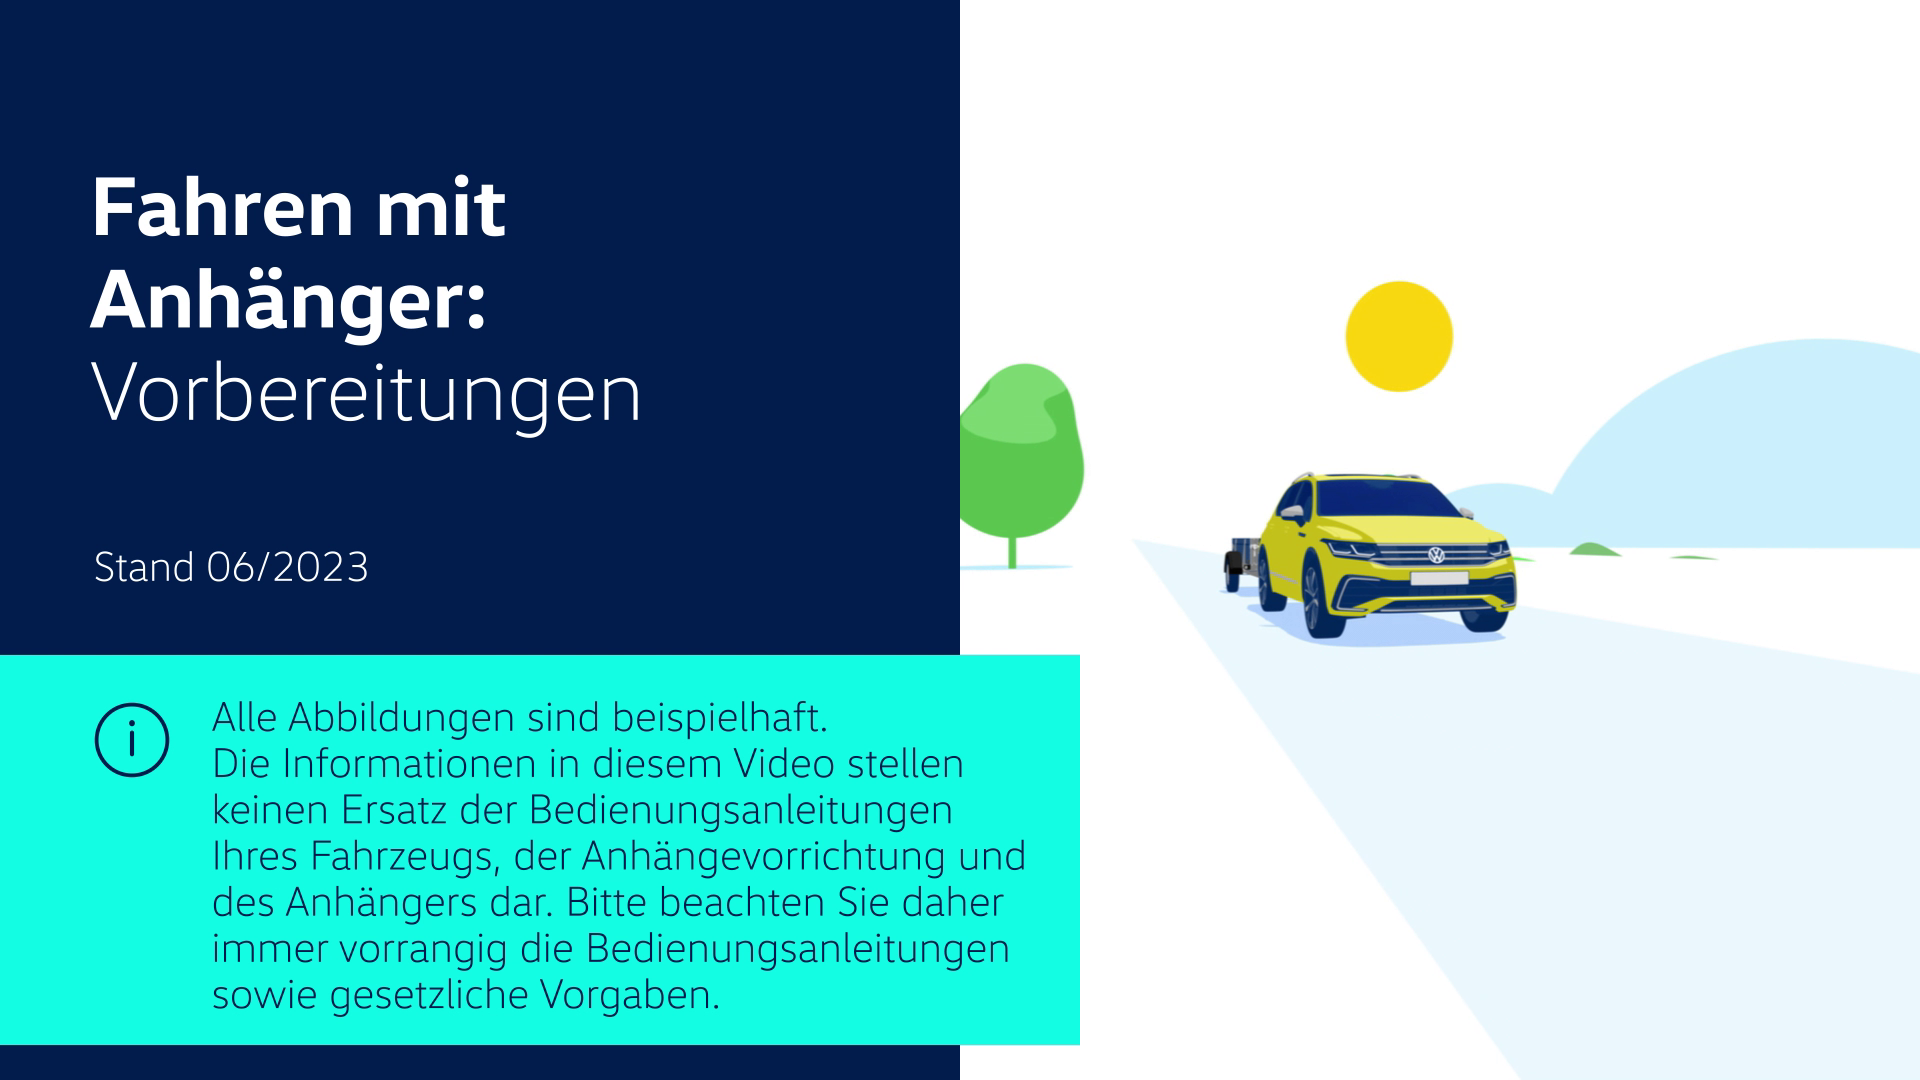 Vorschaubild zum Volkswagen Video-Fahren mit Anhänger